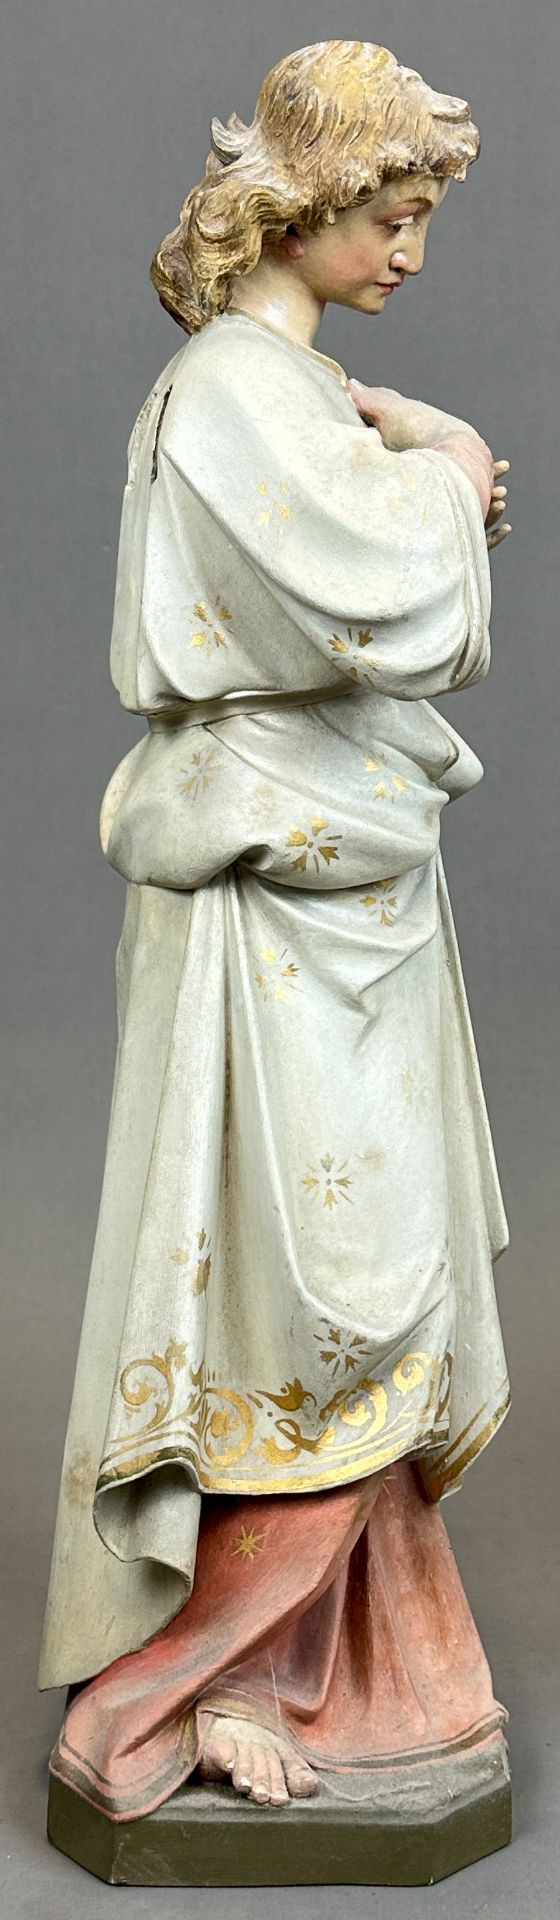 Heiligenfigur. Nazarener. 19. Jahrhundert. Deutschland. - Bild 4 aus 10